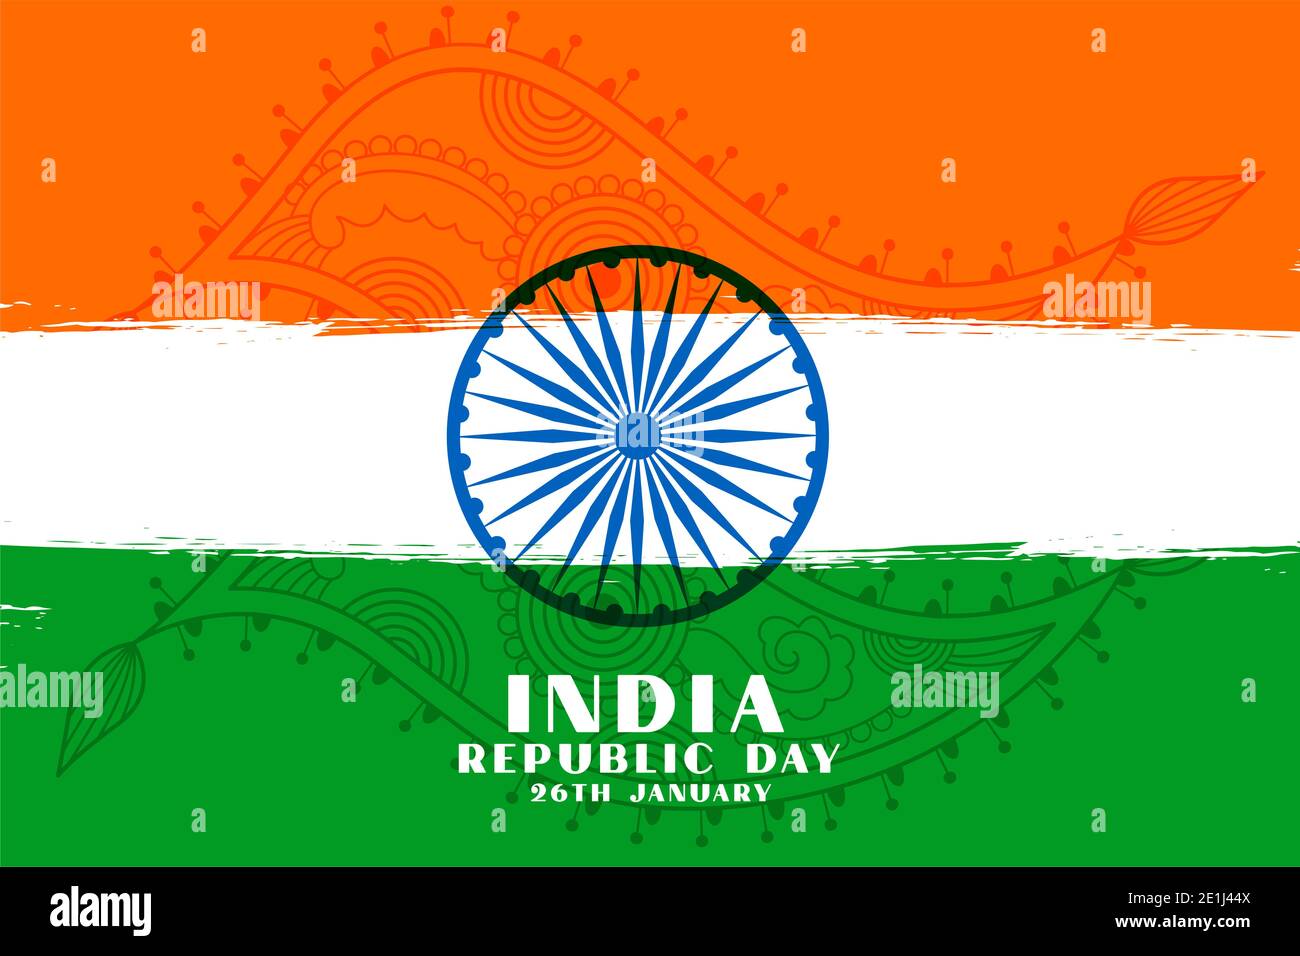 Arrière-plan de la Journée de la République indienne créative, souhaits, message d'accueil Banque D'Images